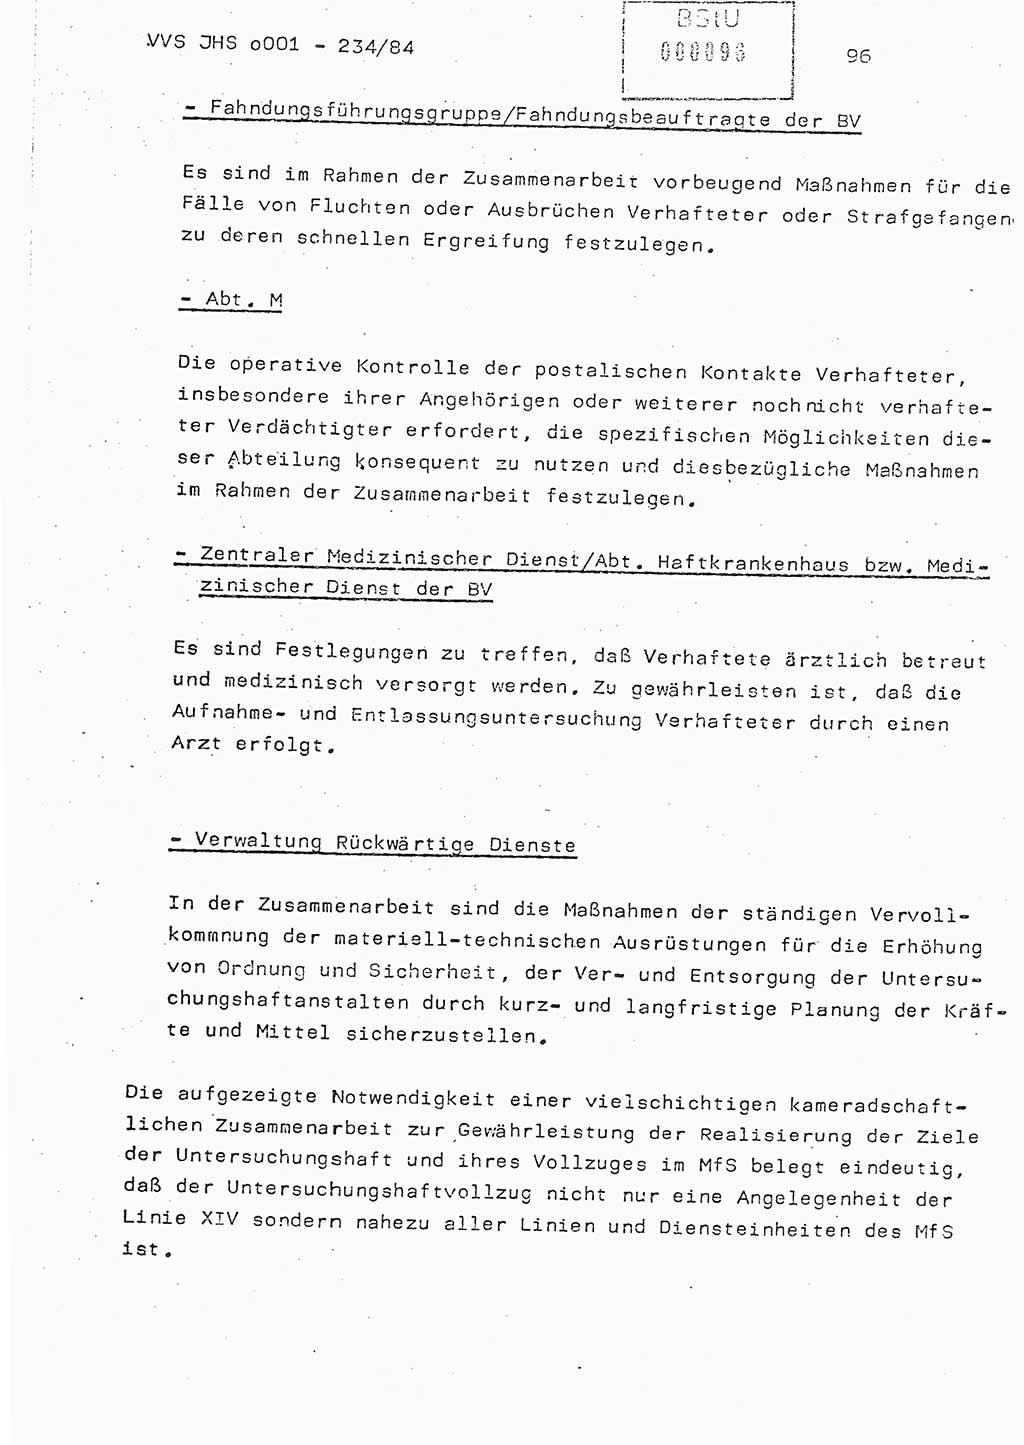 Dissertation Oberst Siegfried Rataizick (Abt. ⅩⅣ), Oberstleutnant Volkmar Heinz (Abt. ⅩⅣ), Oberstleutnant Werner Stein (HA Ⅸ), Hauptmann Heinz Conrad (JHS), Ministerium für Staatssicherheit (MfS) [Deutsche Demokratische Republik (DDR)], Juristische Hochschule (JHS), Vertrauliche Verschlußsache (VVS) o001-234/84, Potsdam 1984, Seite 96 (Diss. MfS DDR JHS VVS o001-234/84 1984, S. 96)